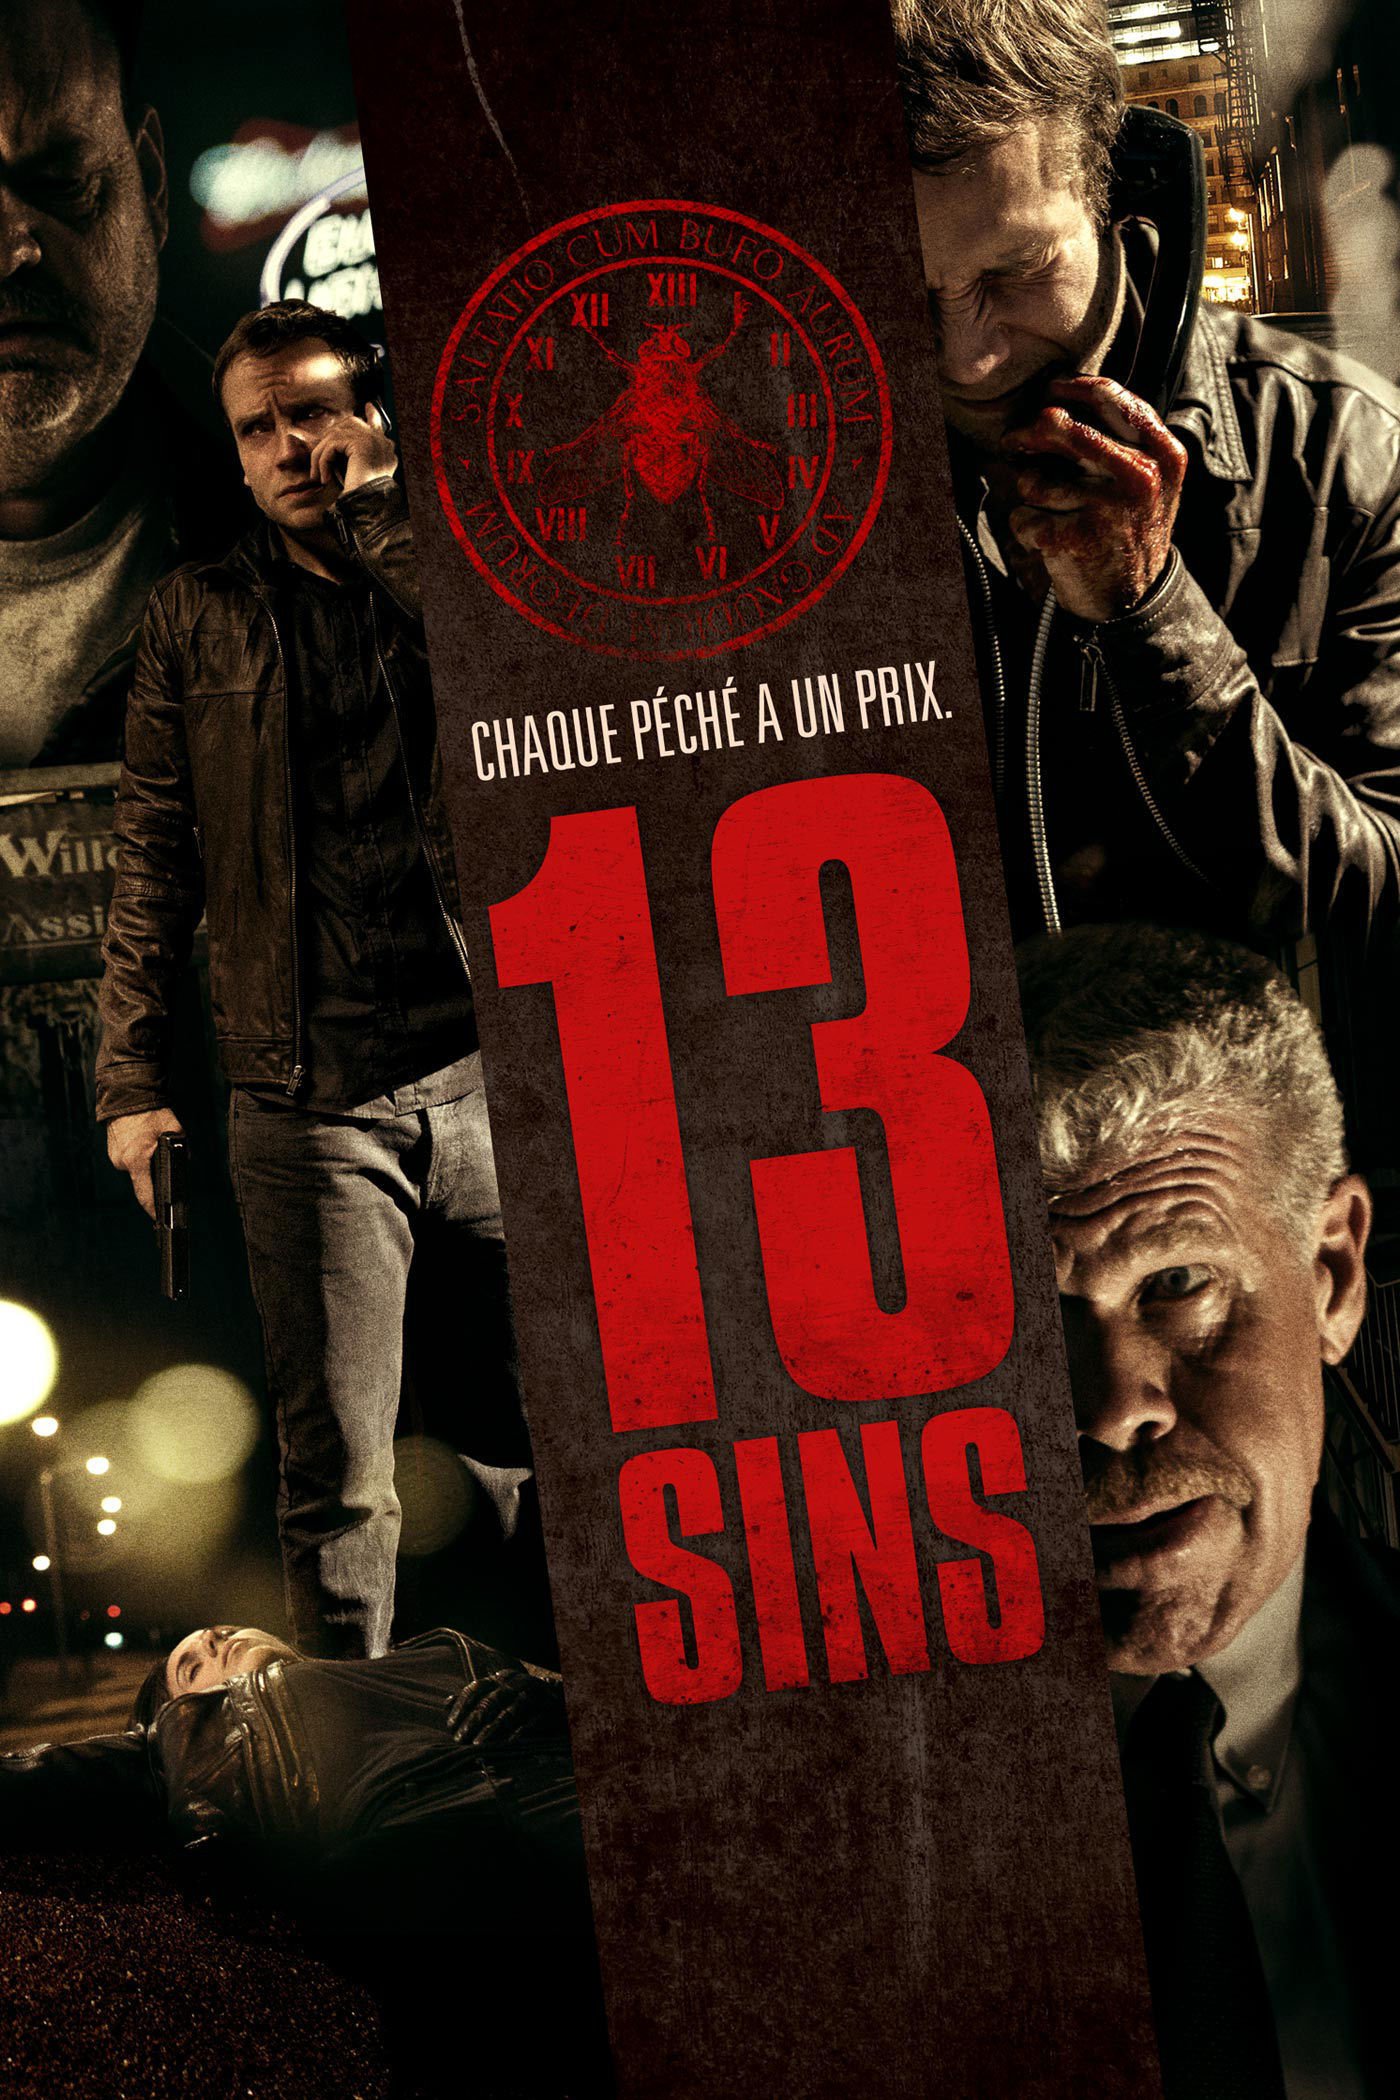 2014 13 Sins